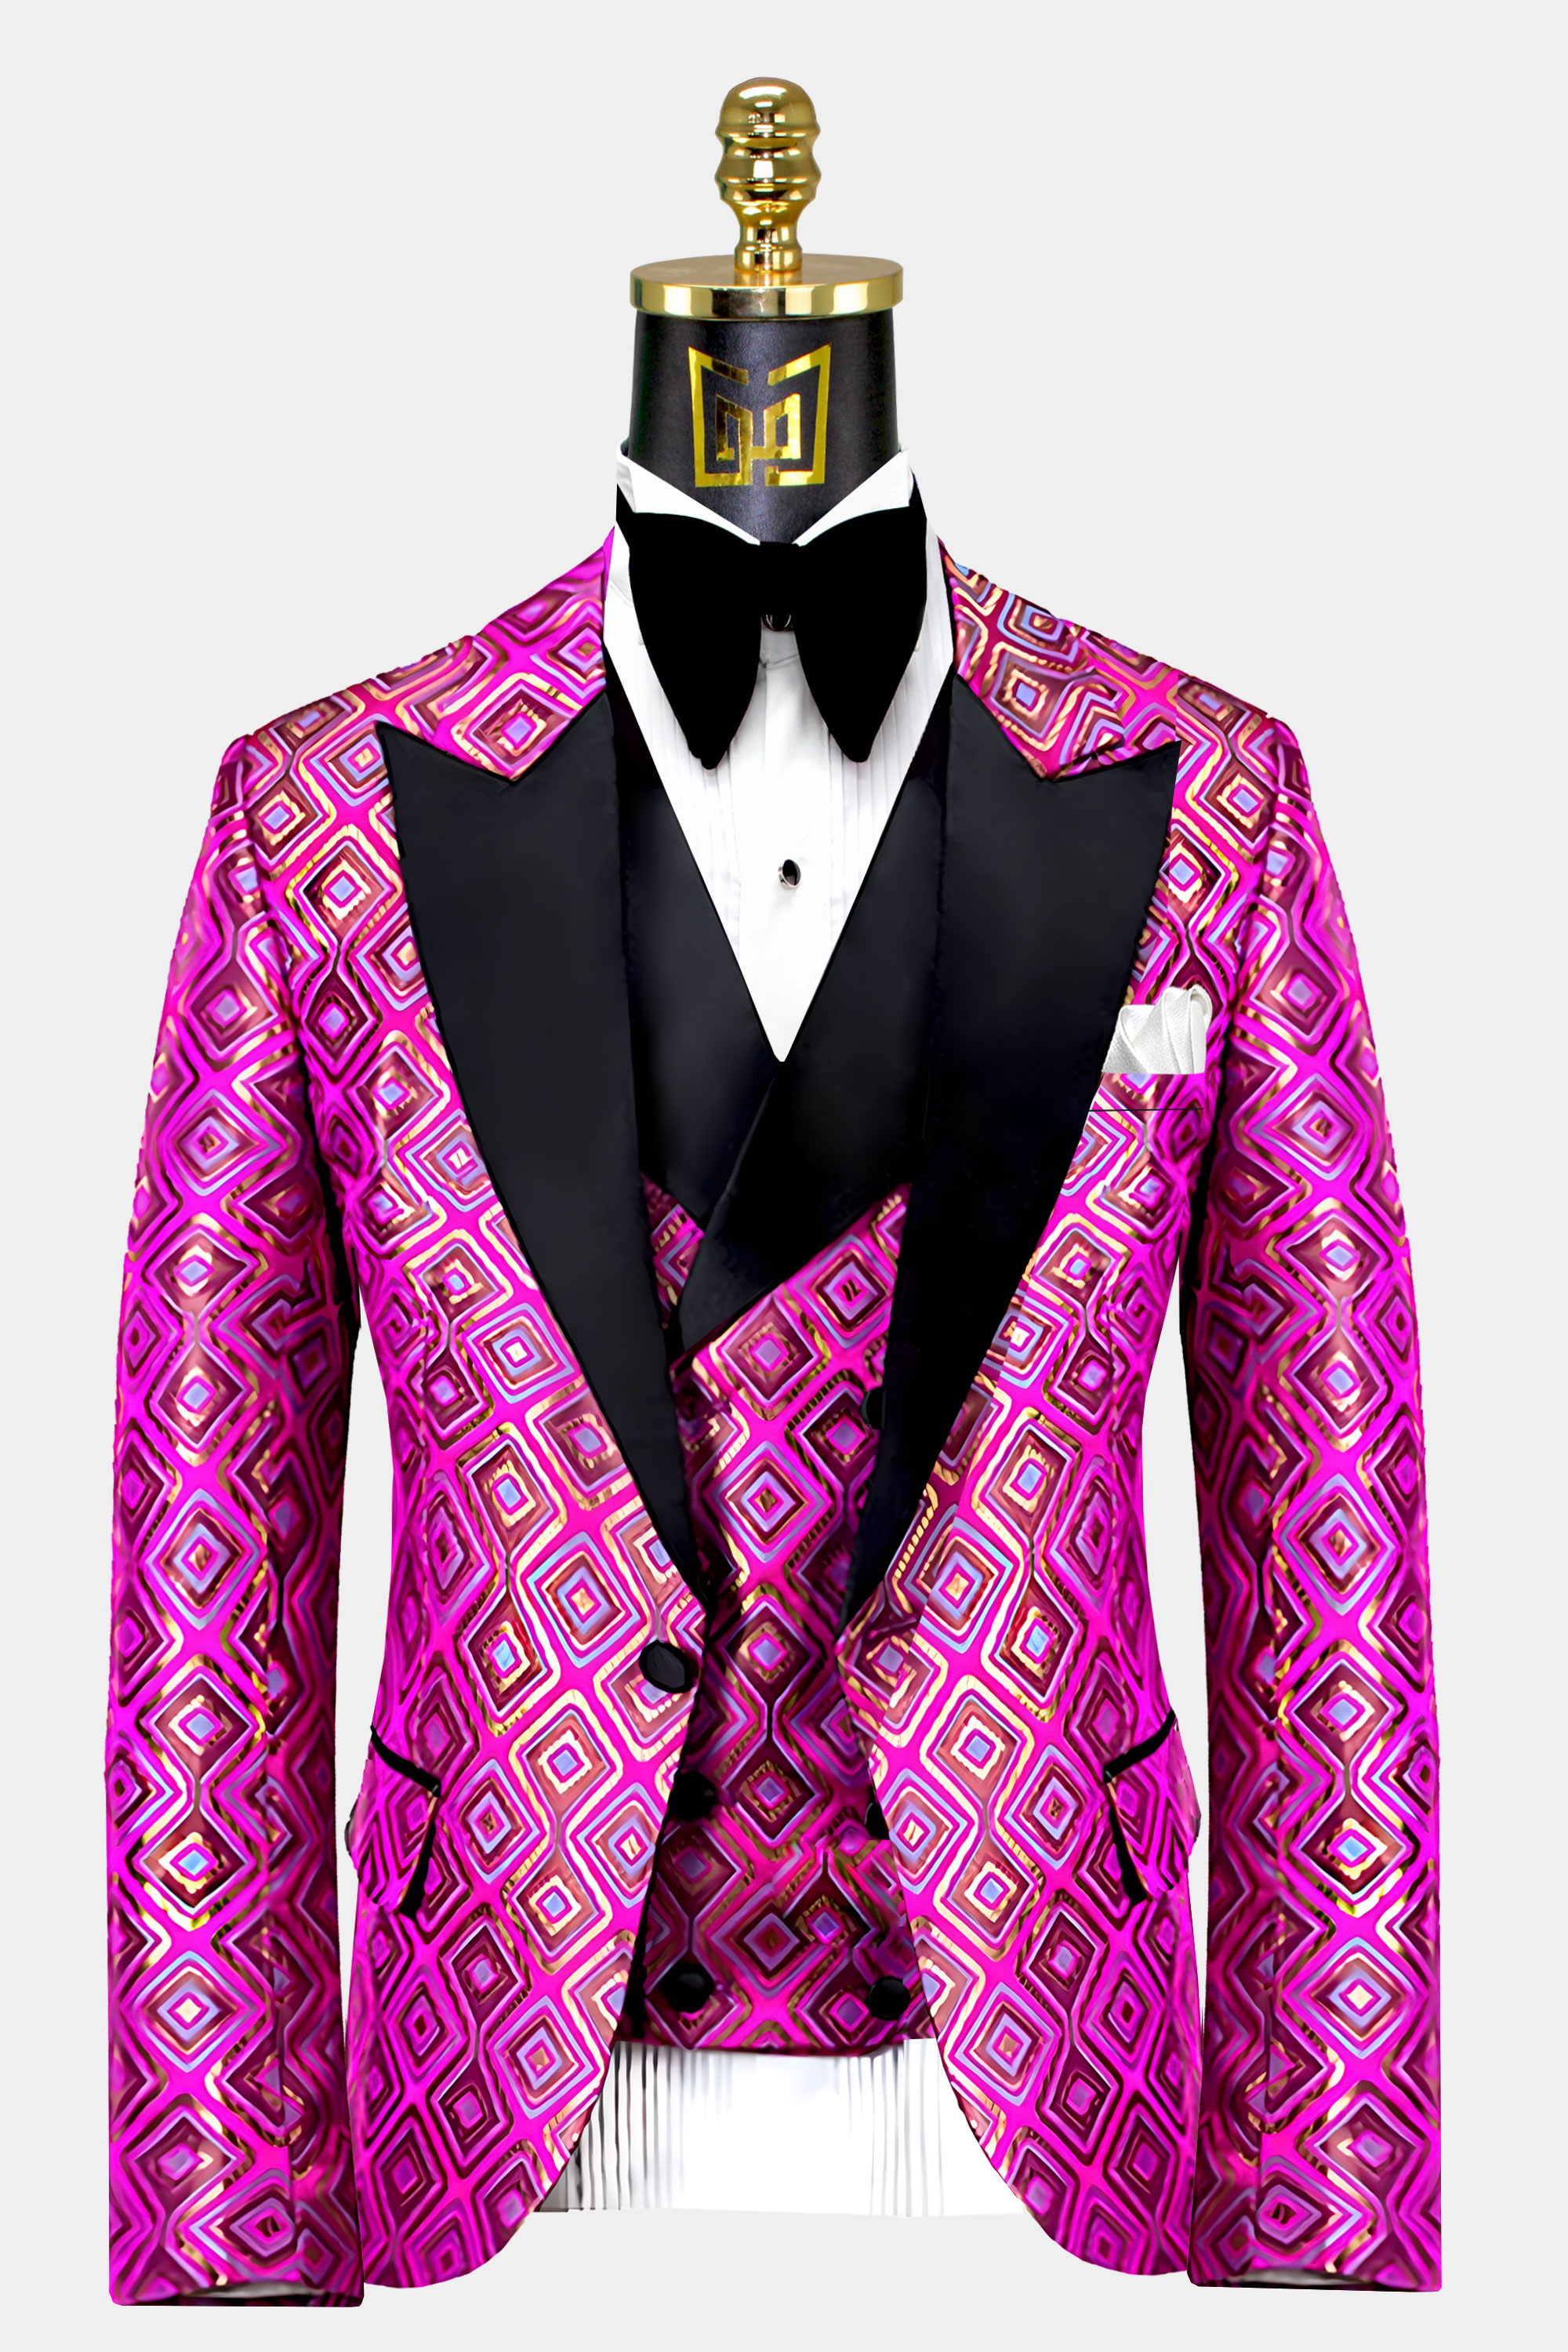 Pink-and-Gold-Tuxedo-Jacket-from-Gentlemansguru.Com